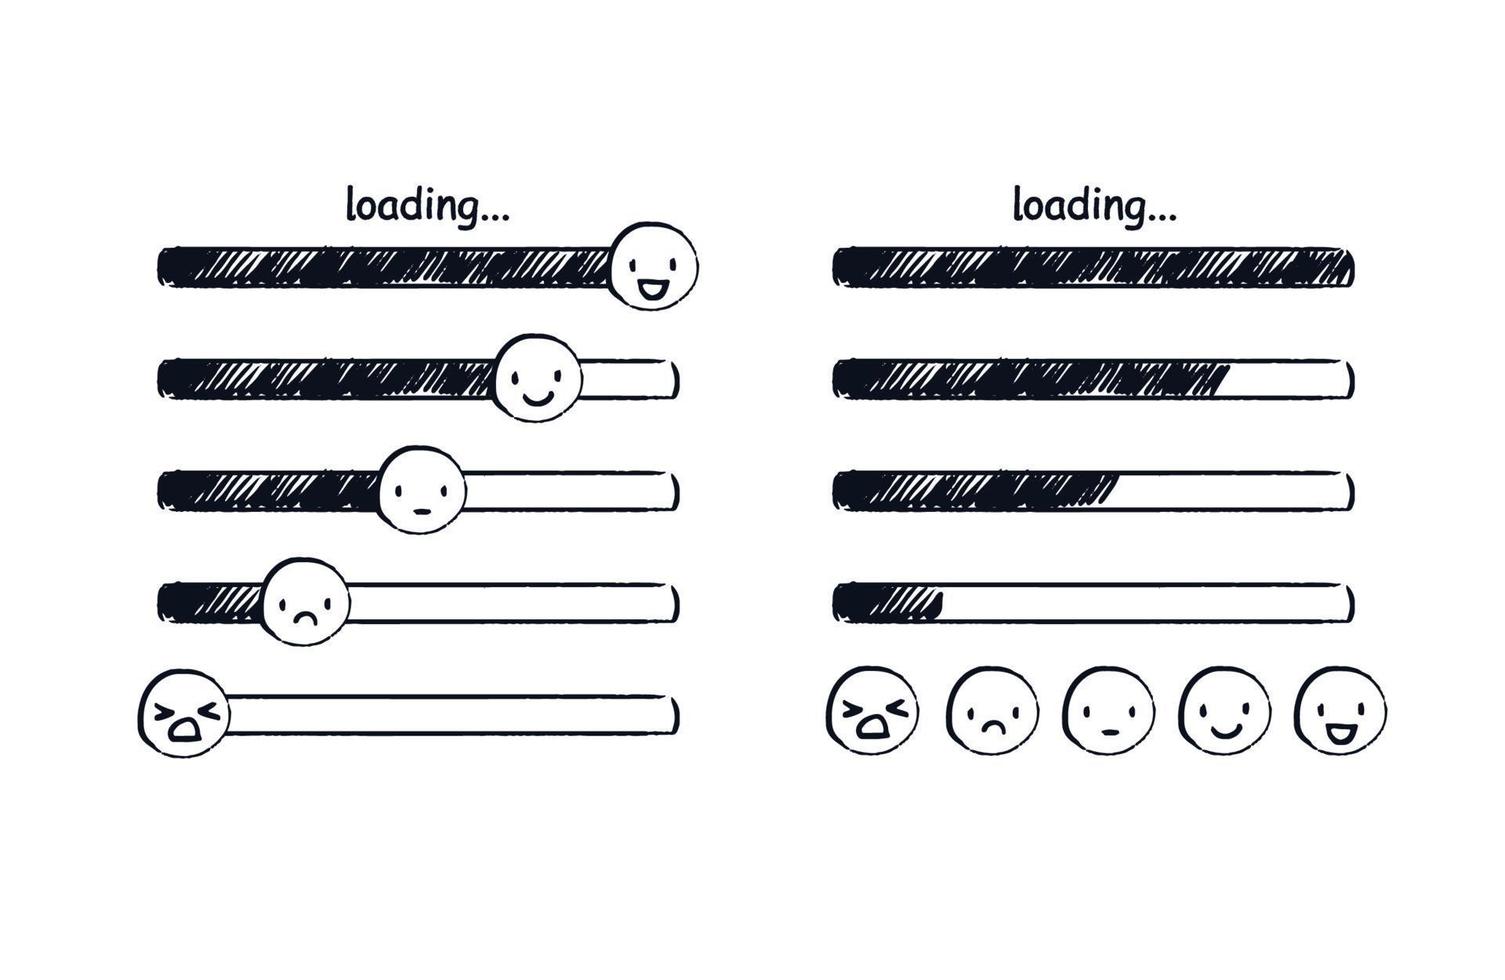 barra de carga emoji. indicador de estado de ánimo de fideos o emoticonos dibujados a mano que van desde tristes hasta felices. ilustración de boceto vectorial de diferentes niveles de carga de una página web. vector